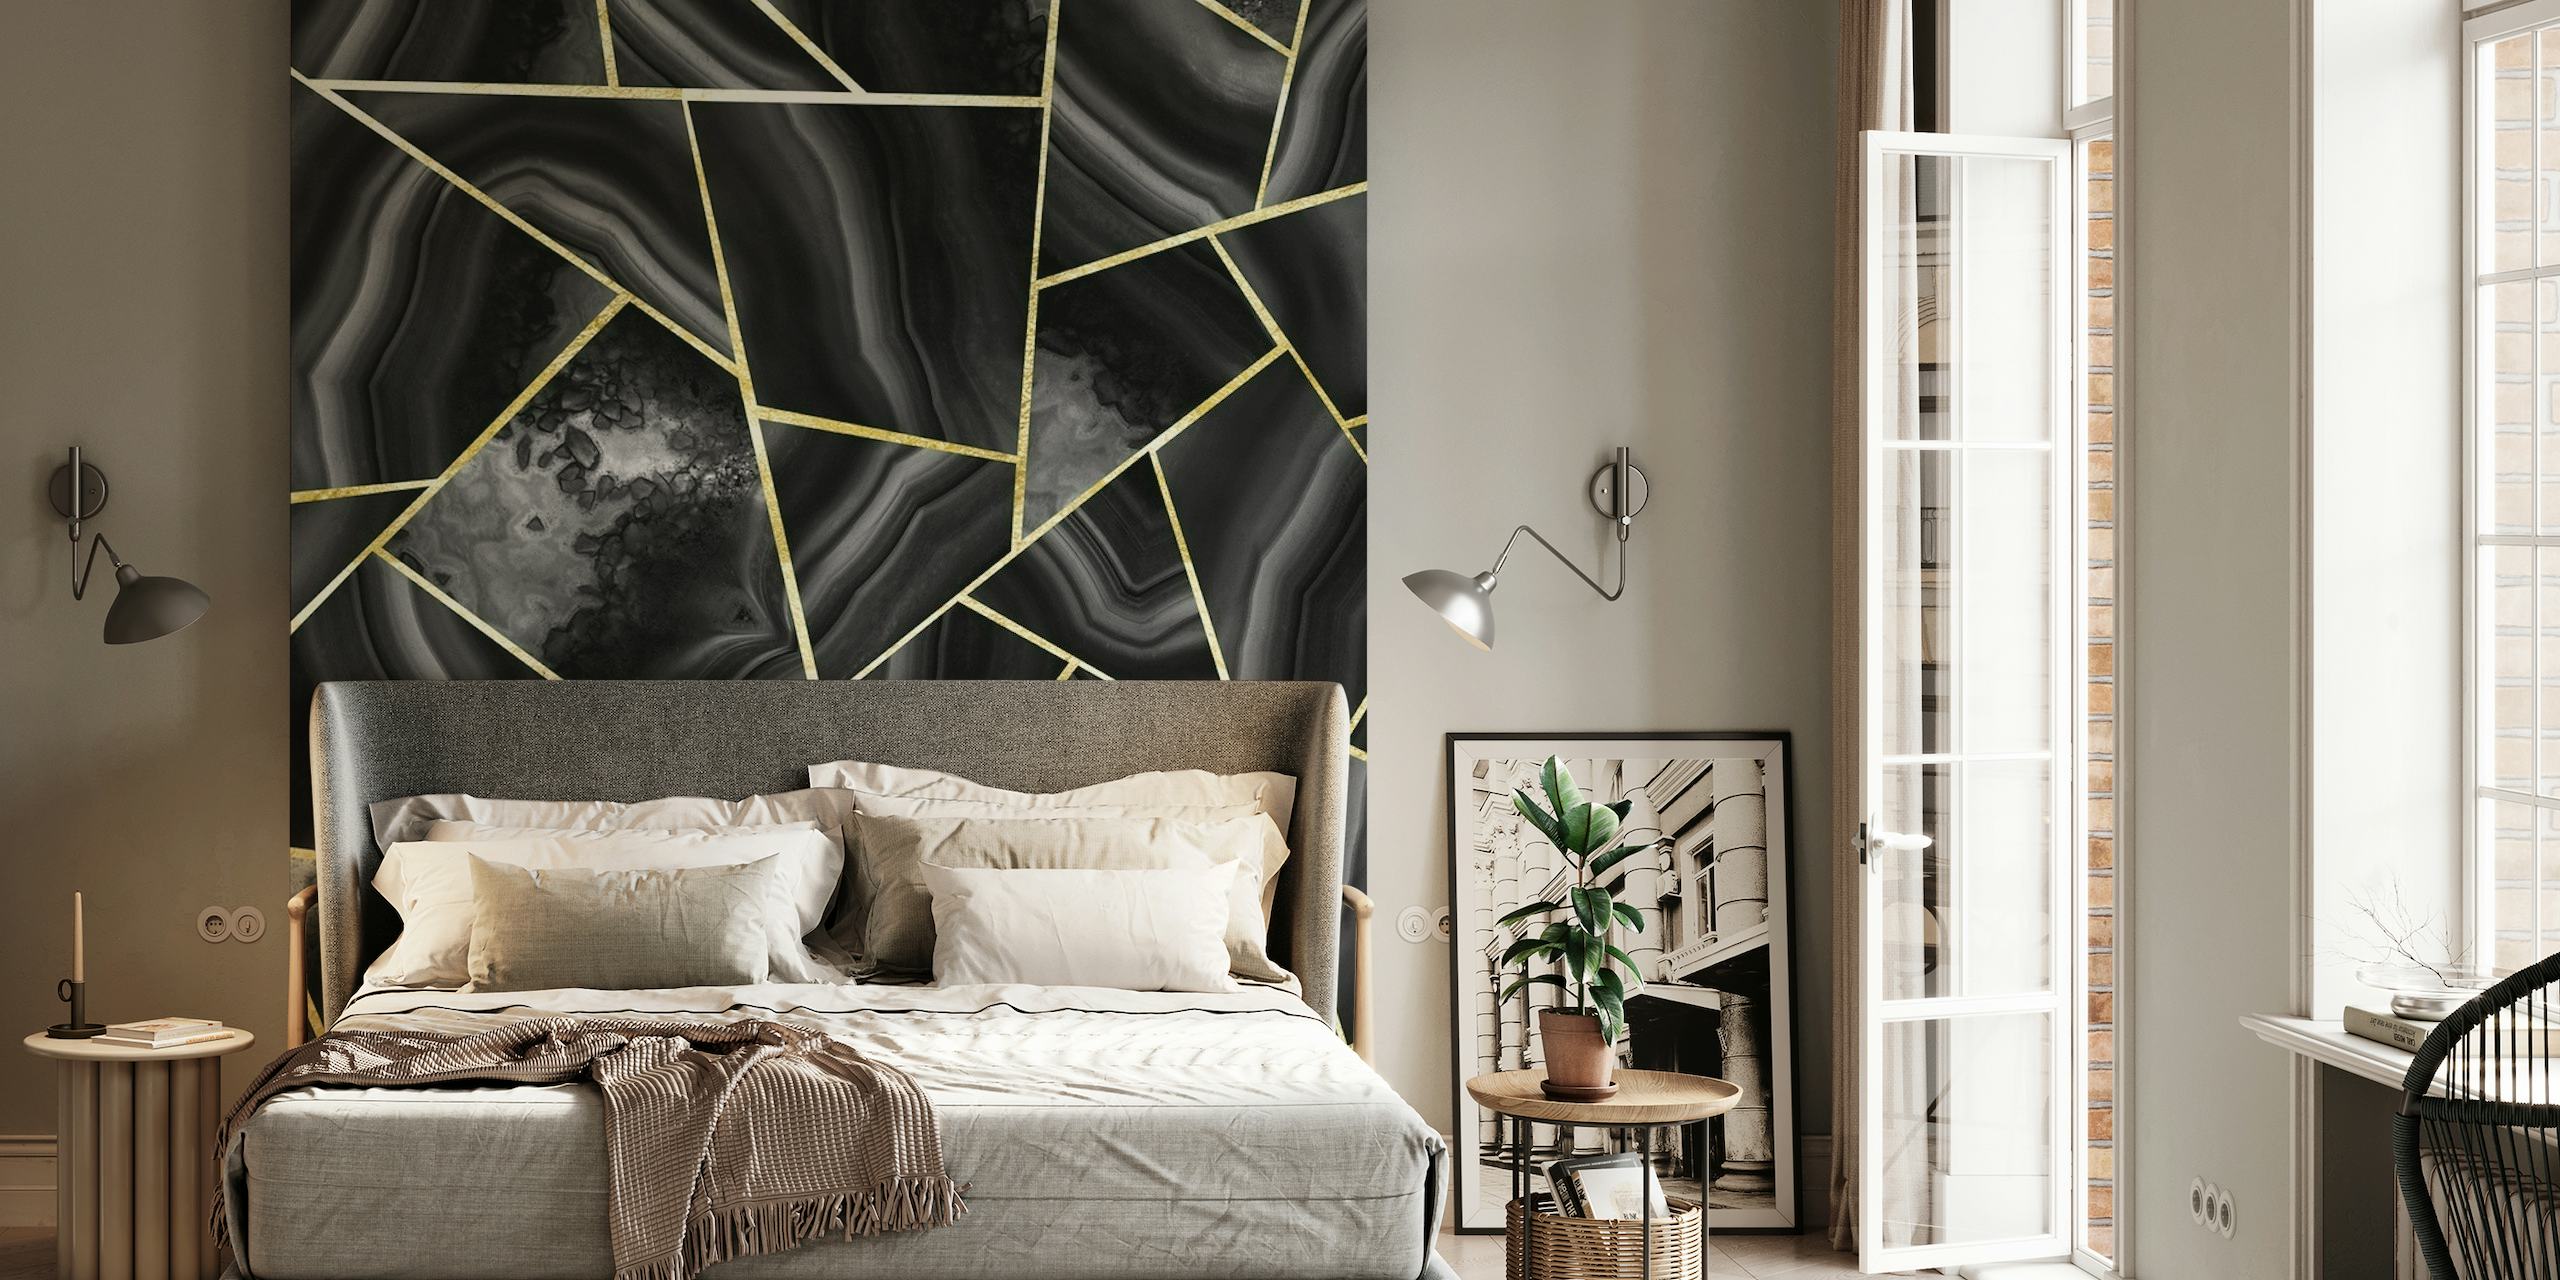 Papier peint mural inspiré des agates noires et dorées avec des lignes géométriques